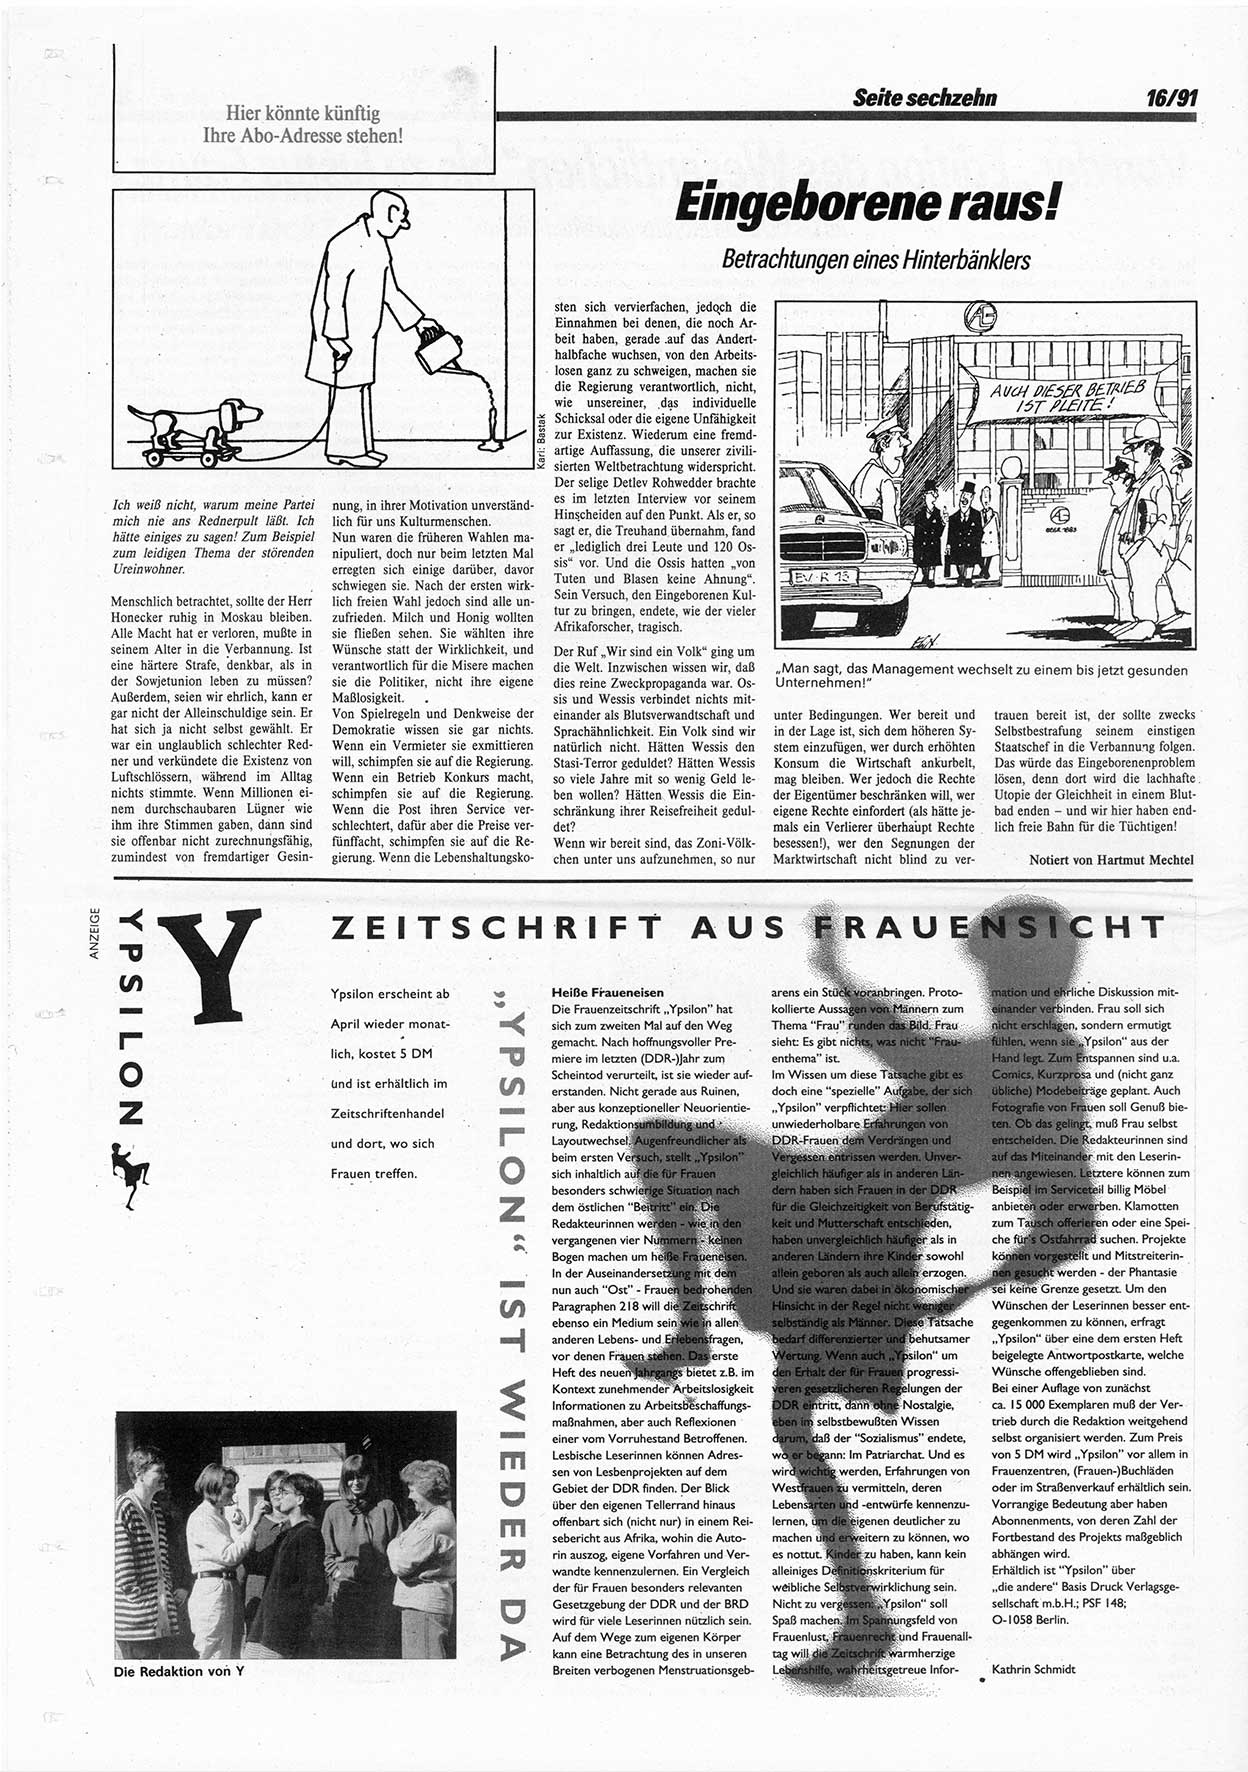 Die Andere, Unabhängige Wochenzeitung für Politik, Kultur und Kunst, Ausgabe 16 vom 17.4.1991, Seite 16 (And. W.-Zg. Ausg. 16 1991, S. 16)